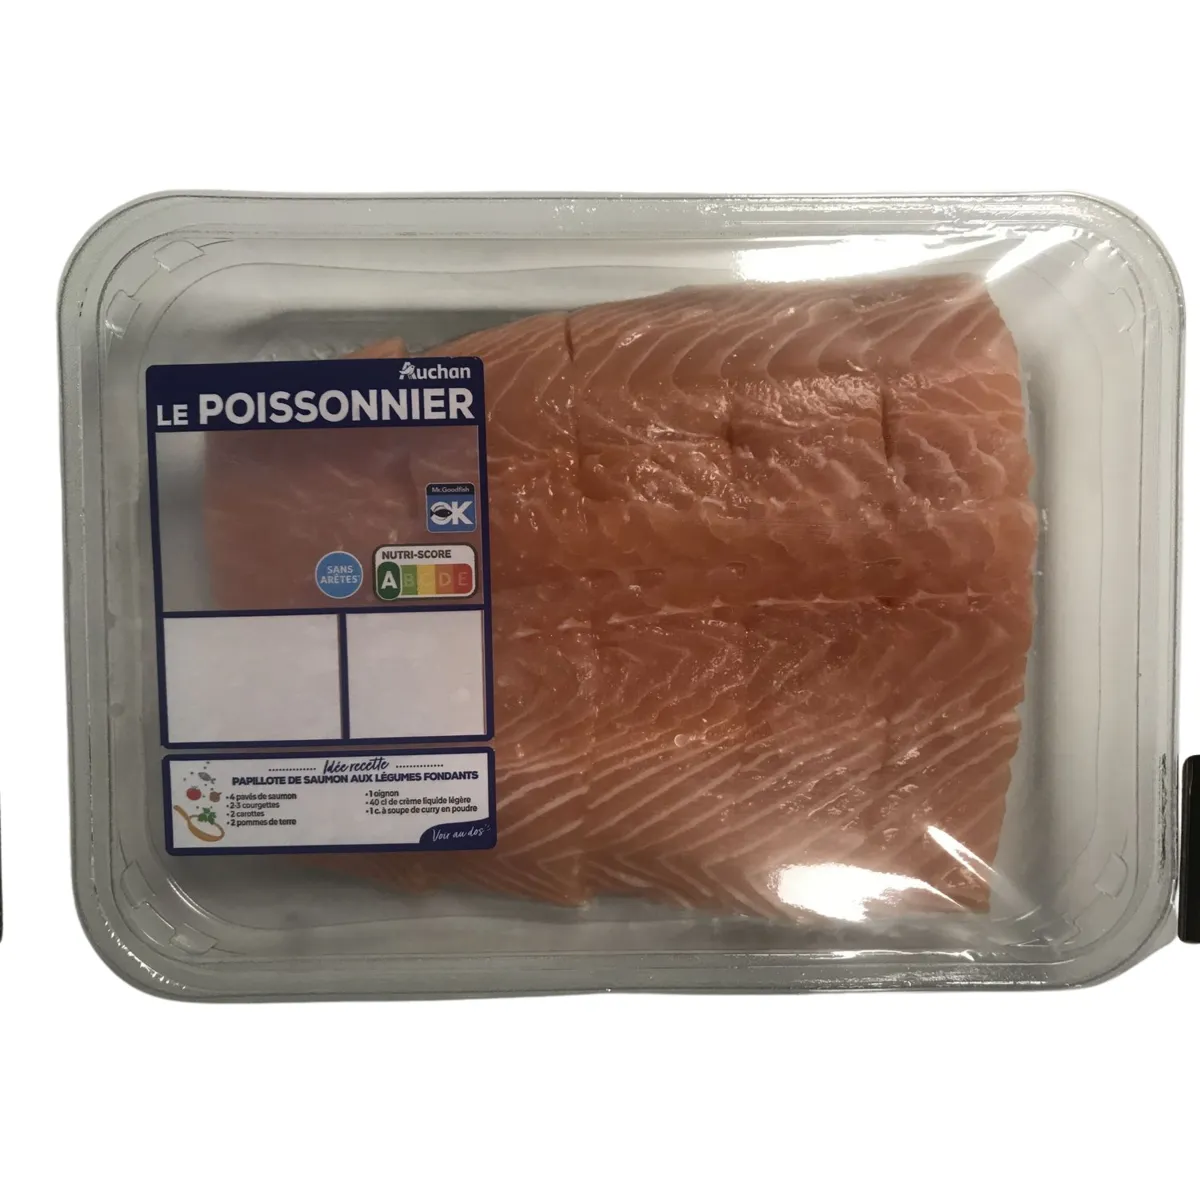 5 pavés de saumon atlantique filière auchan "cultivons le bon"